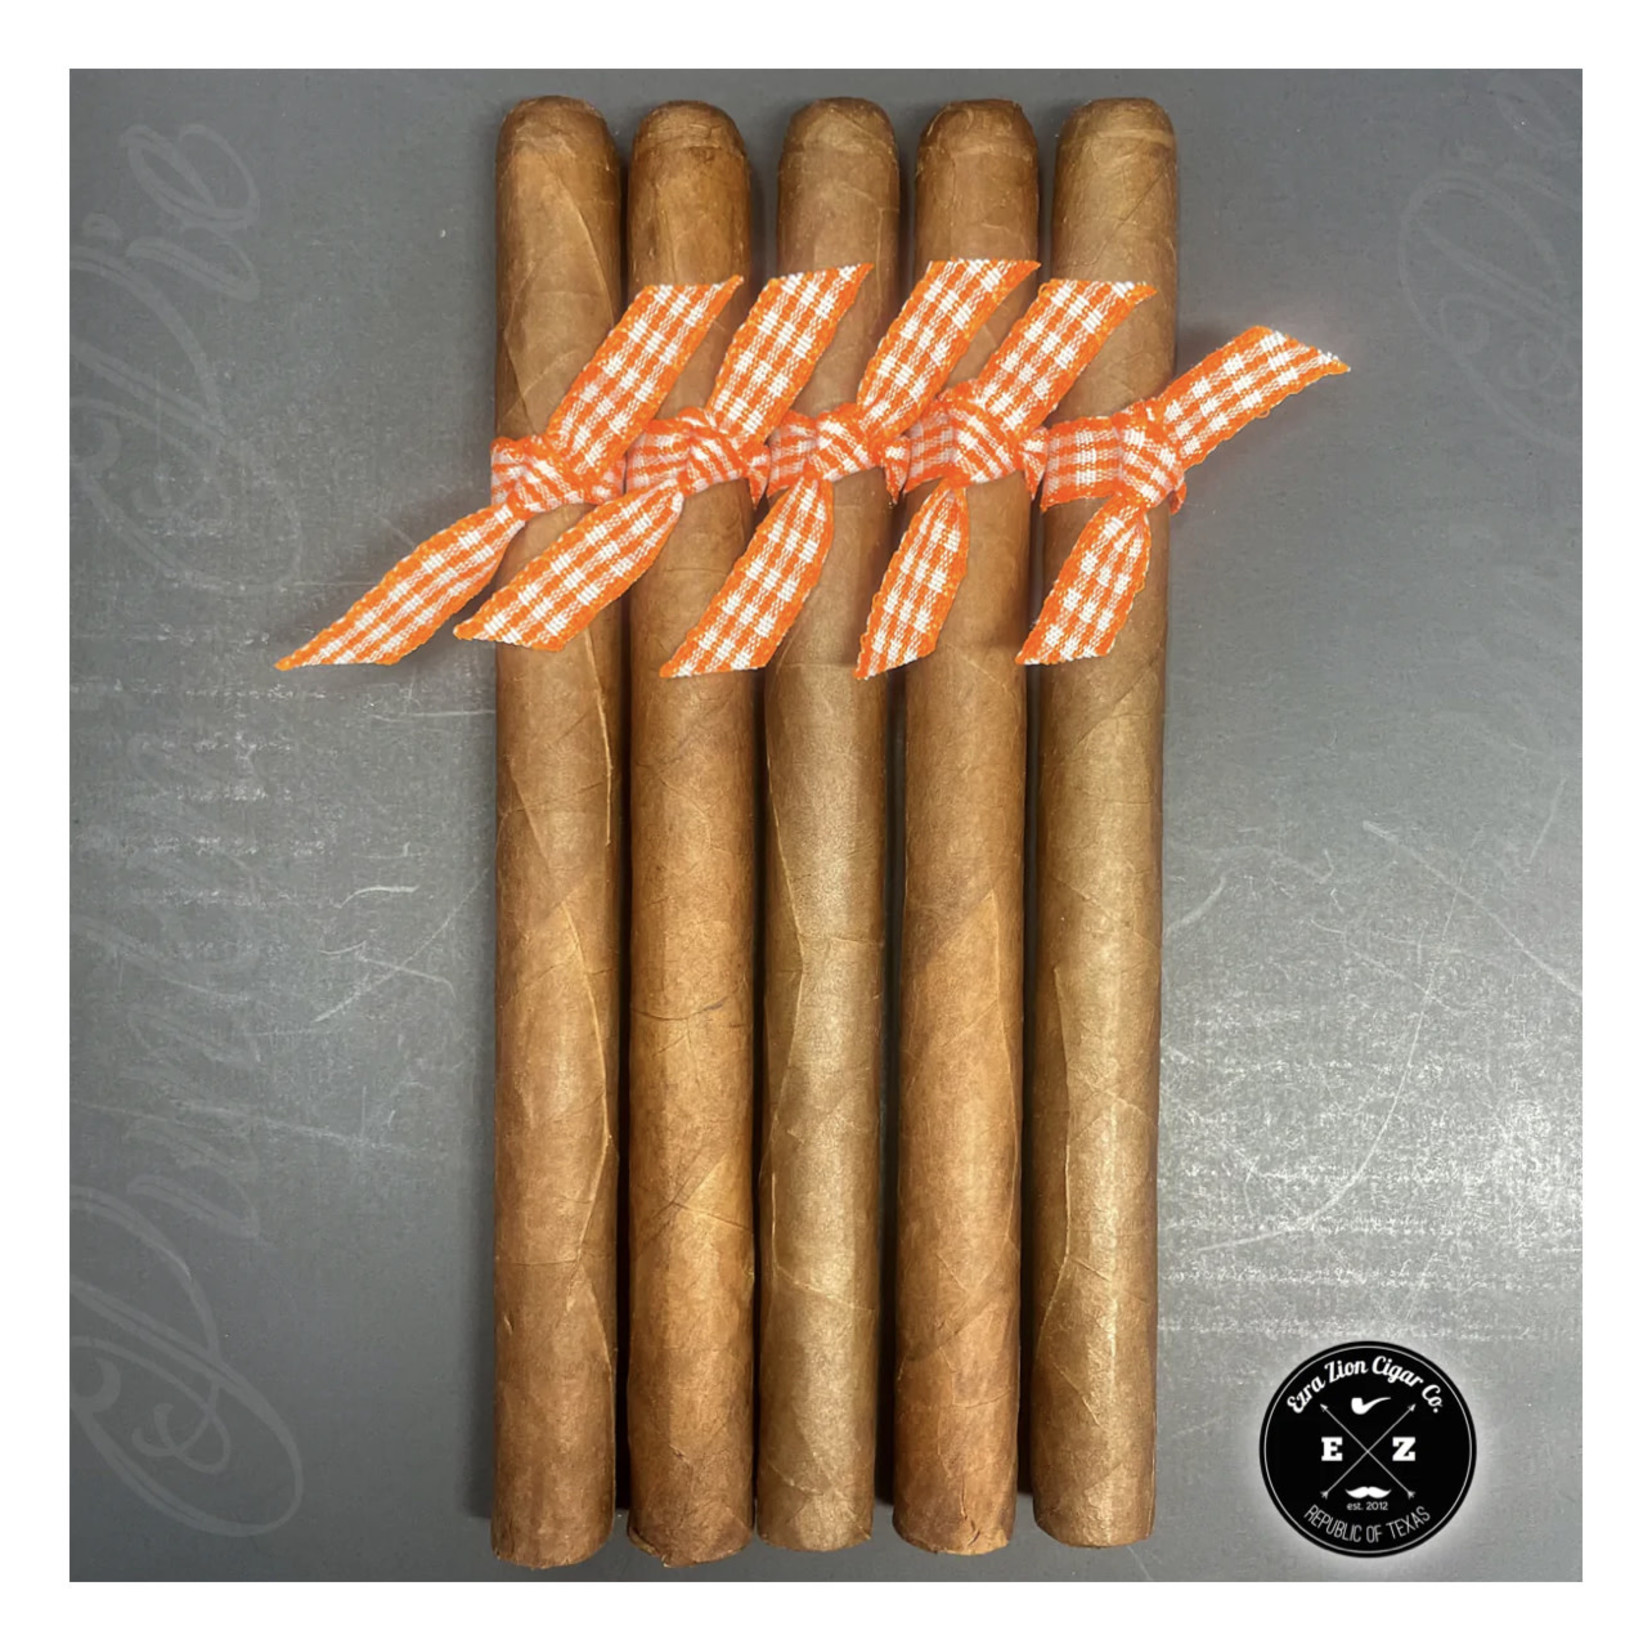 Ezra Zion Cigars PUNKIN’ PIE & CREAM ’22